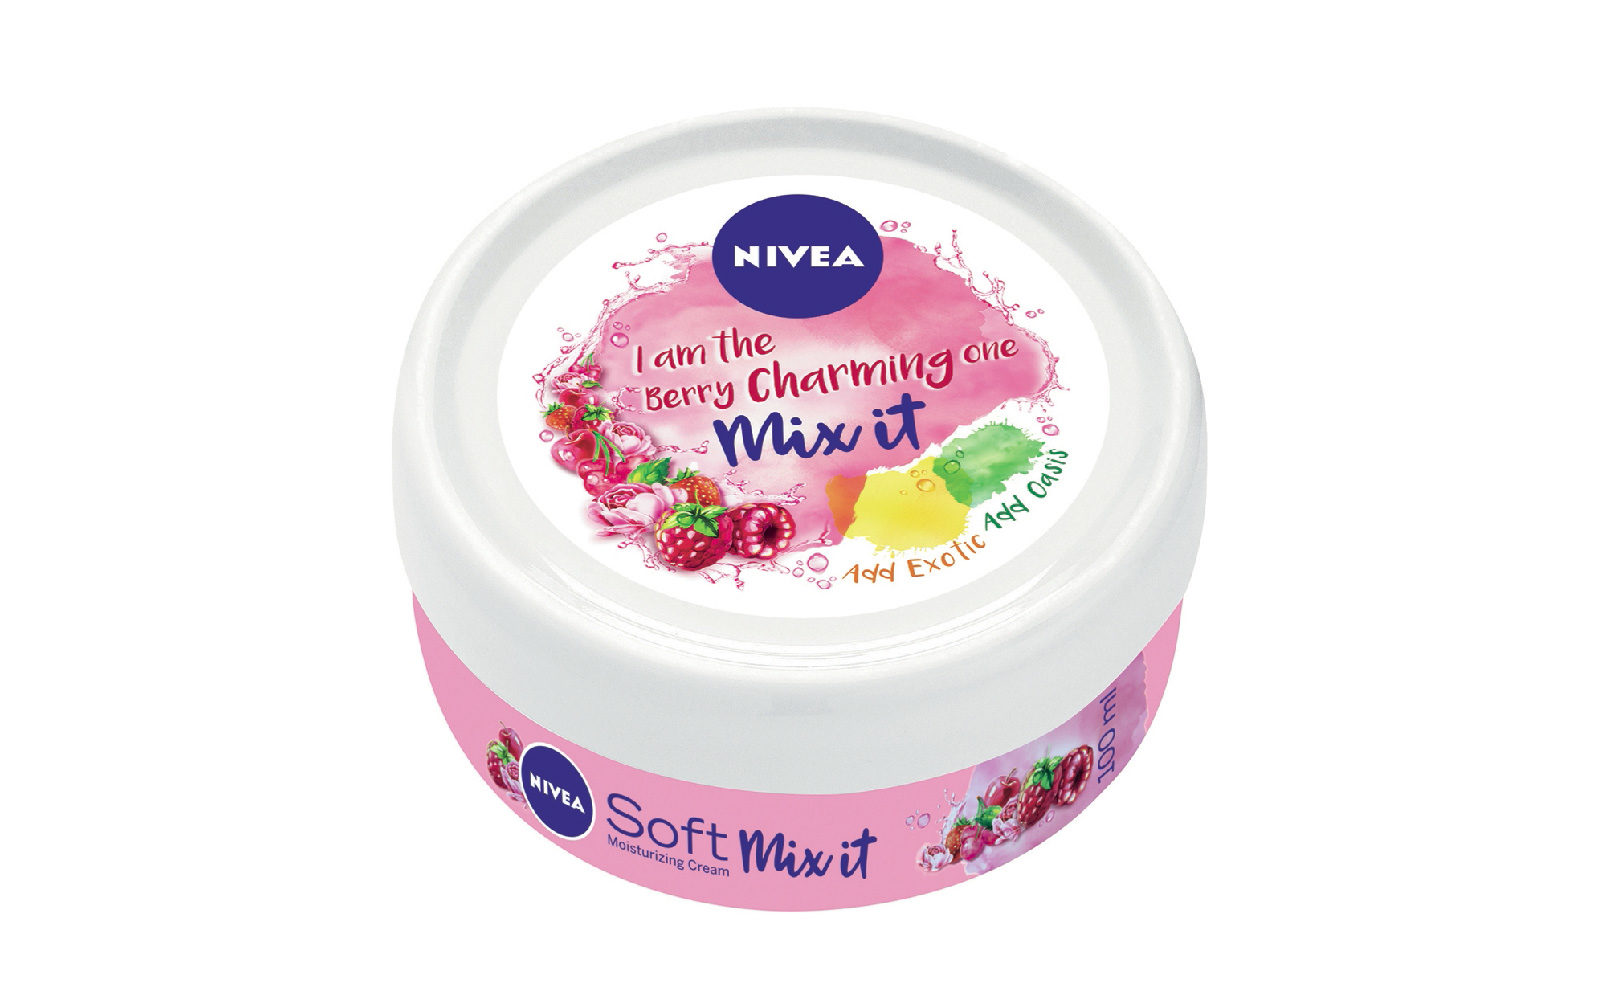 Nivea Soft Mix it si può usare come idratante viso e corpo o come rimedio S.O.S. (grande distribuzione, 2,49 euro).